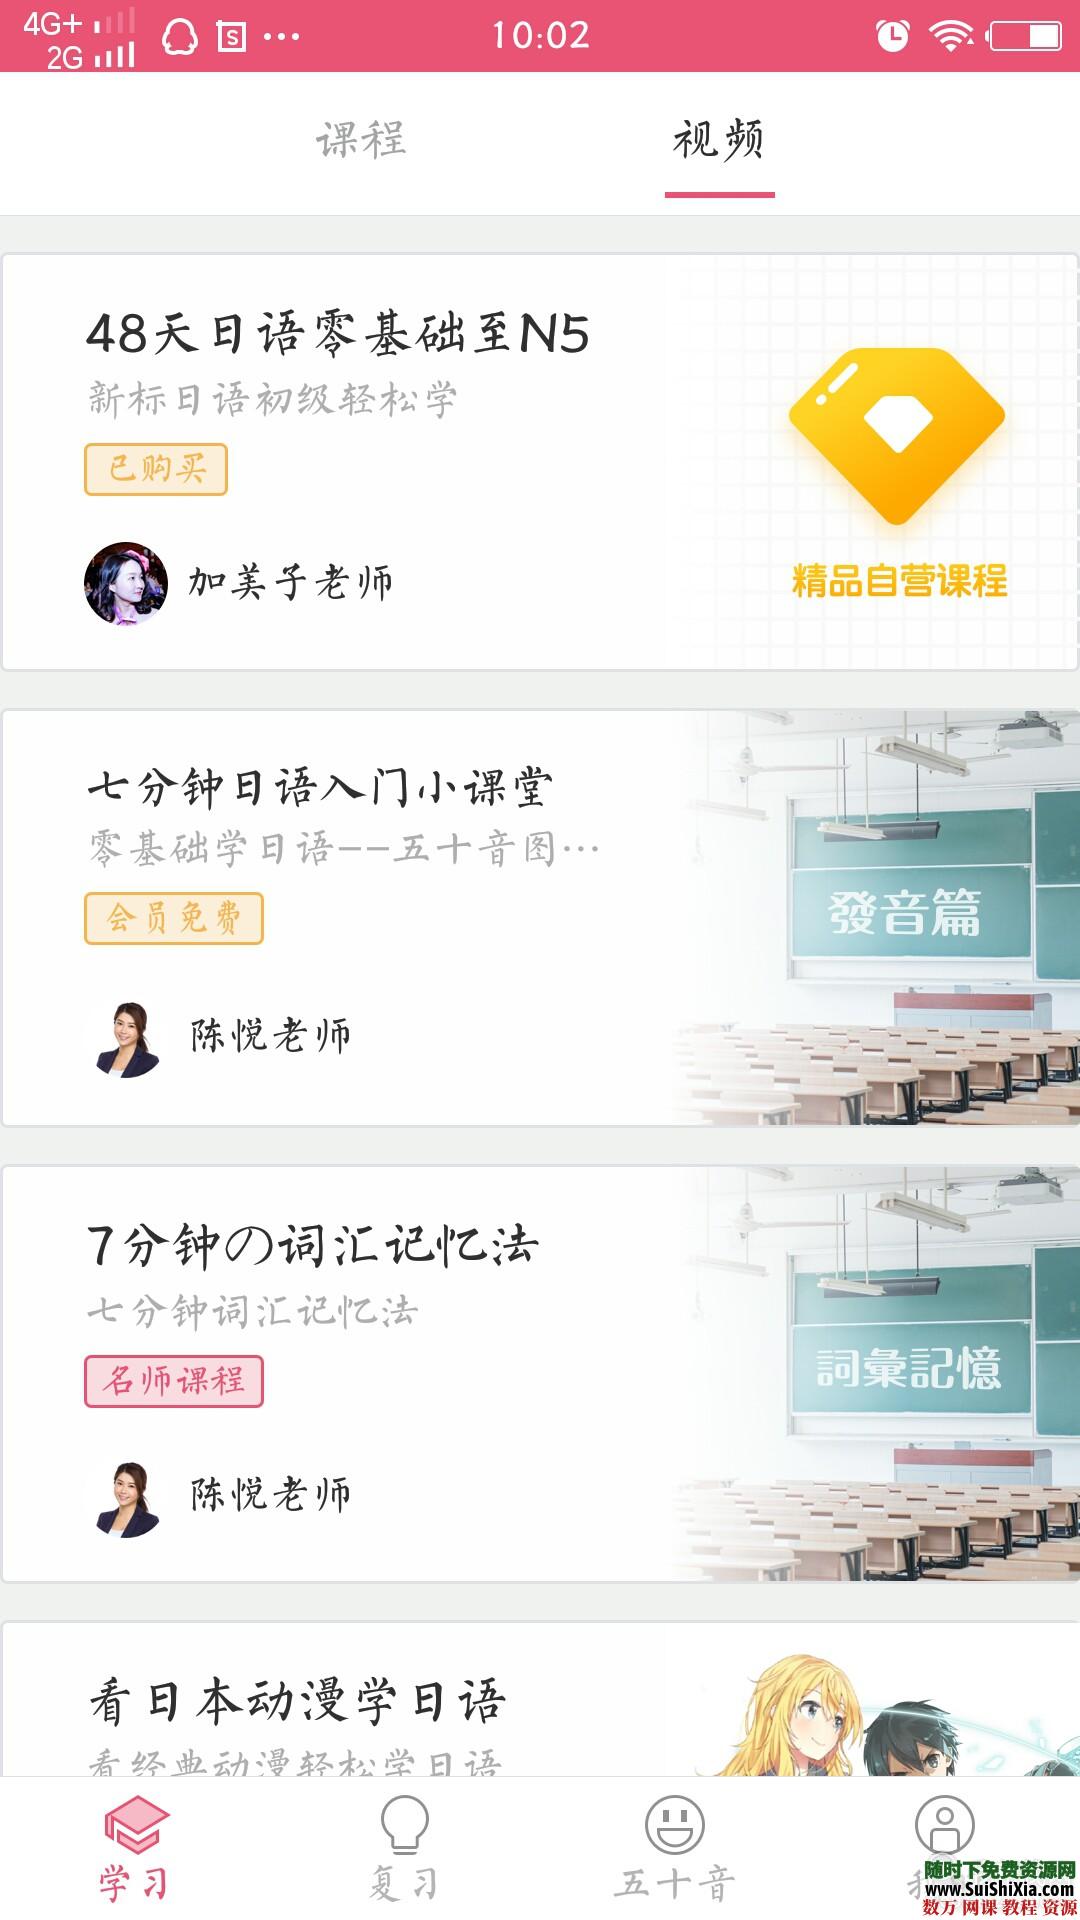 日语50音秒会 绝对专业 神器app 这是什么神仙app呀 升级打怪式学习 第2张